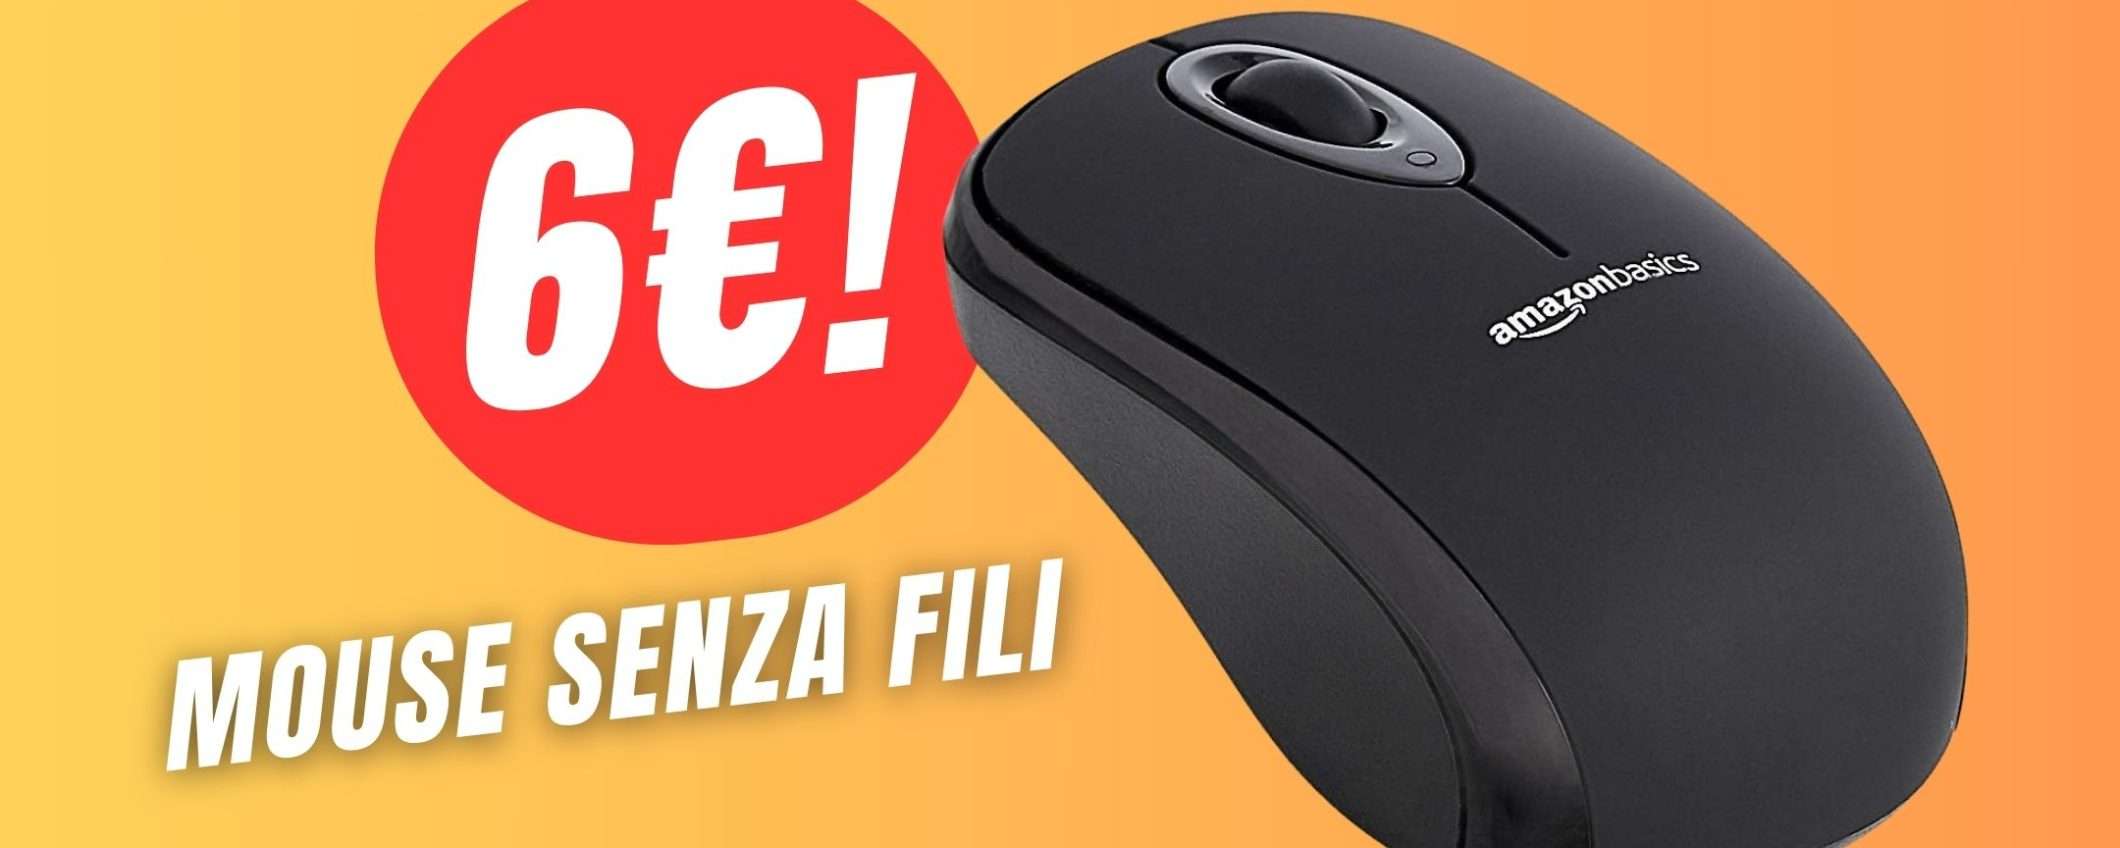 PREZZO FOLLE per il Mouse Senza Fili di Amazon: meno di 7€!